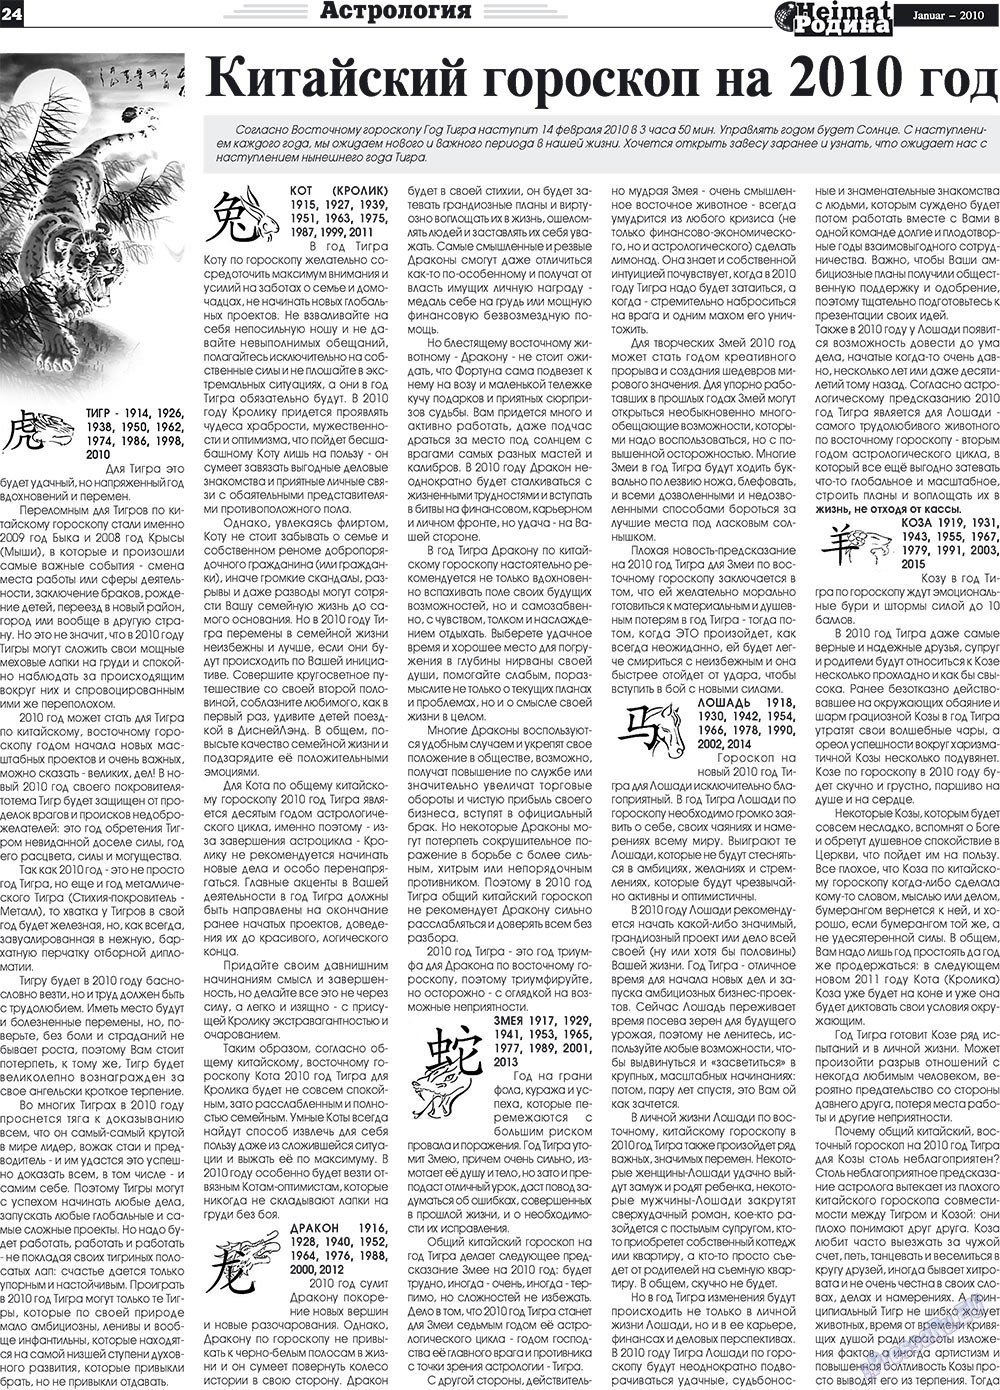 Heimat-Родина (газета). 2010 год, номер 1, стр. 24